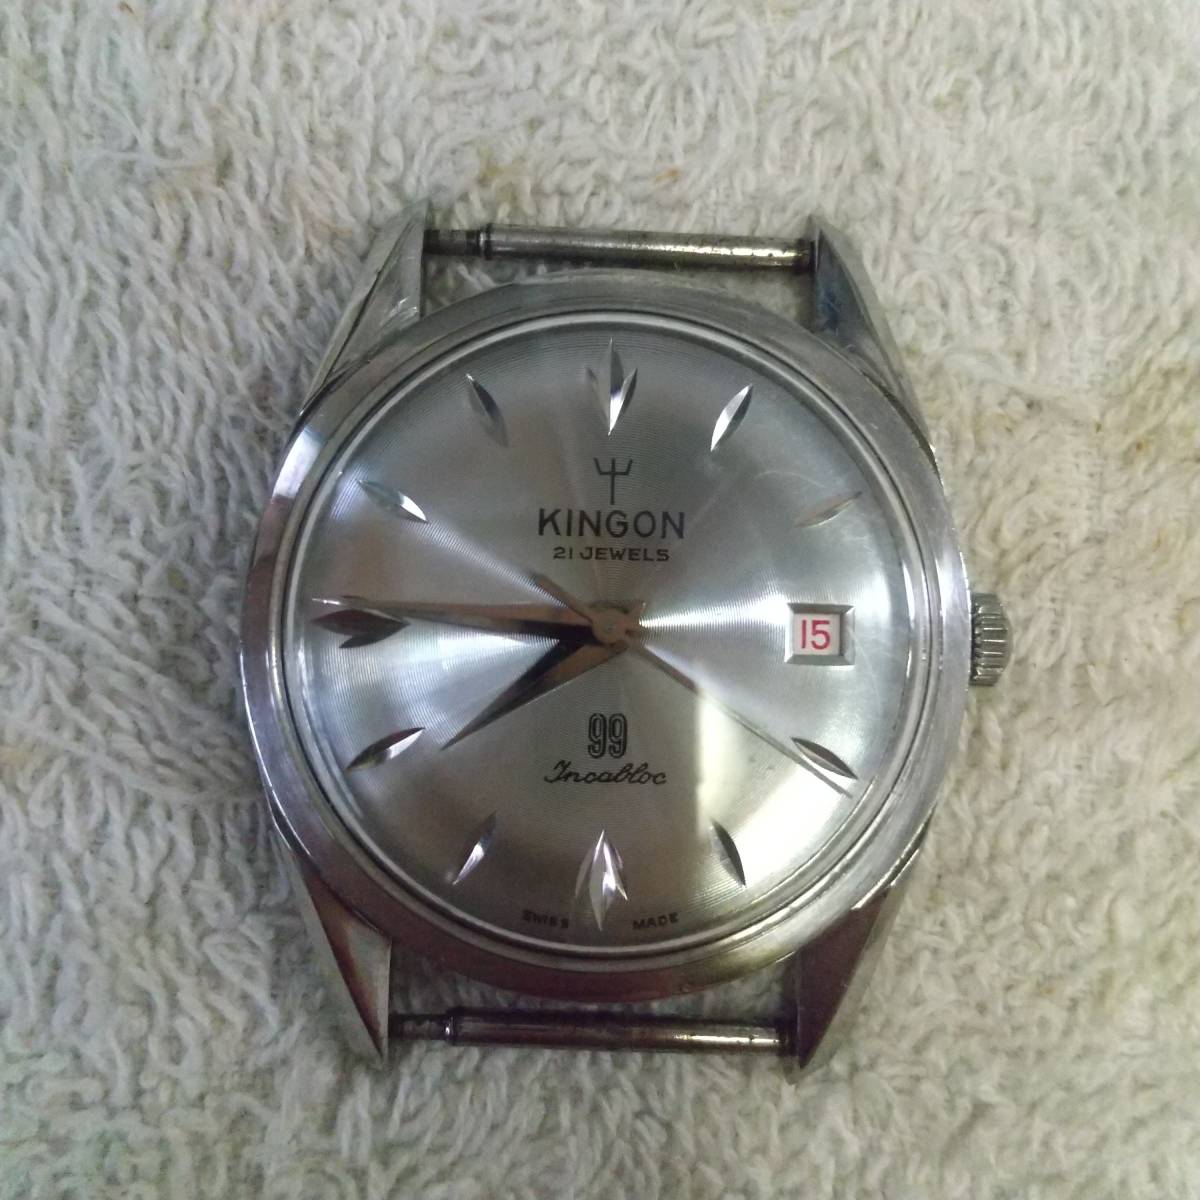 珍品 KINGON スイス製 99 腕時計